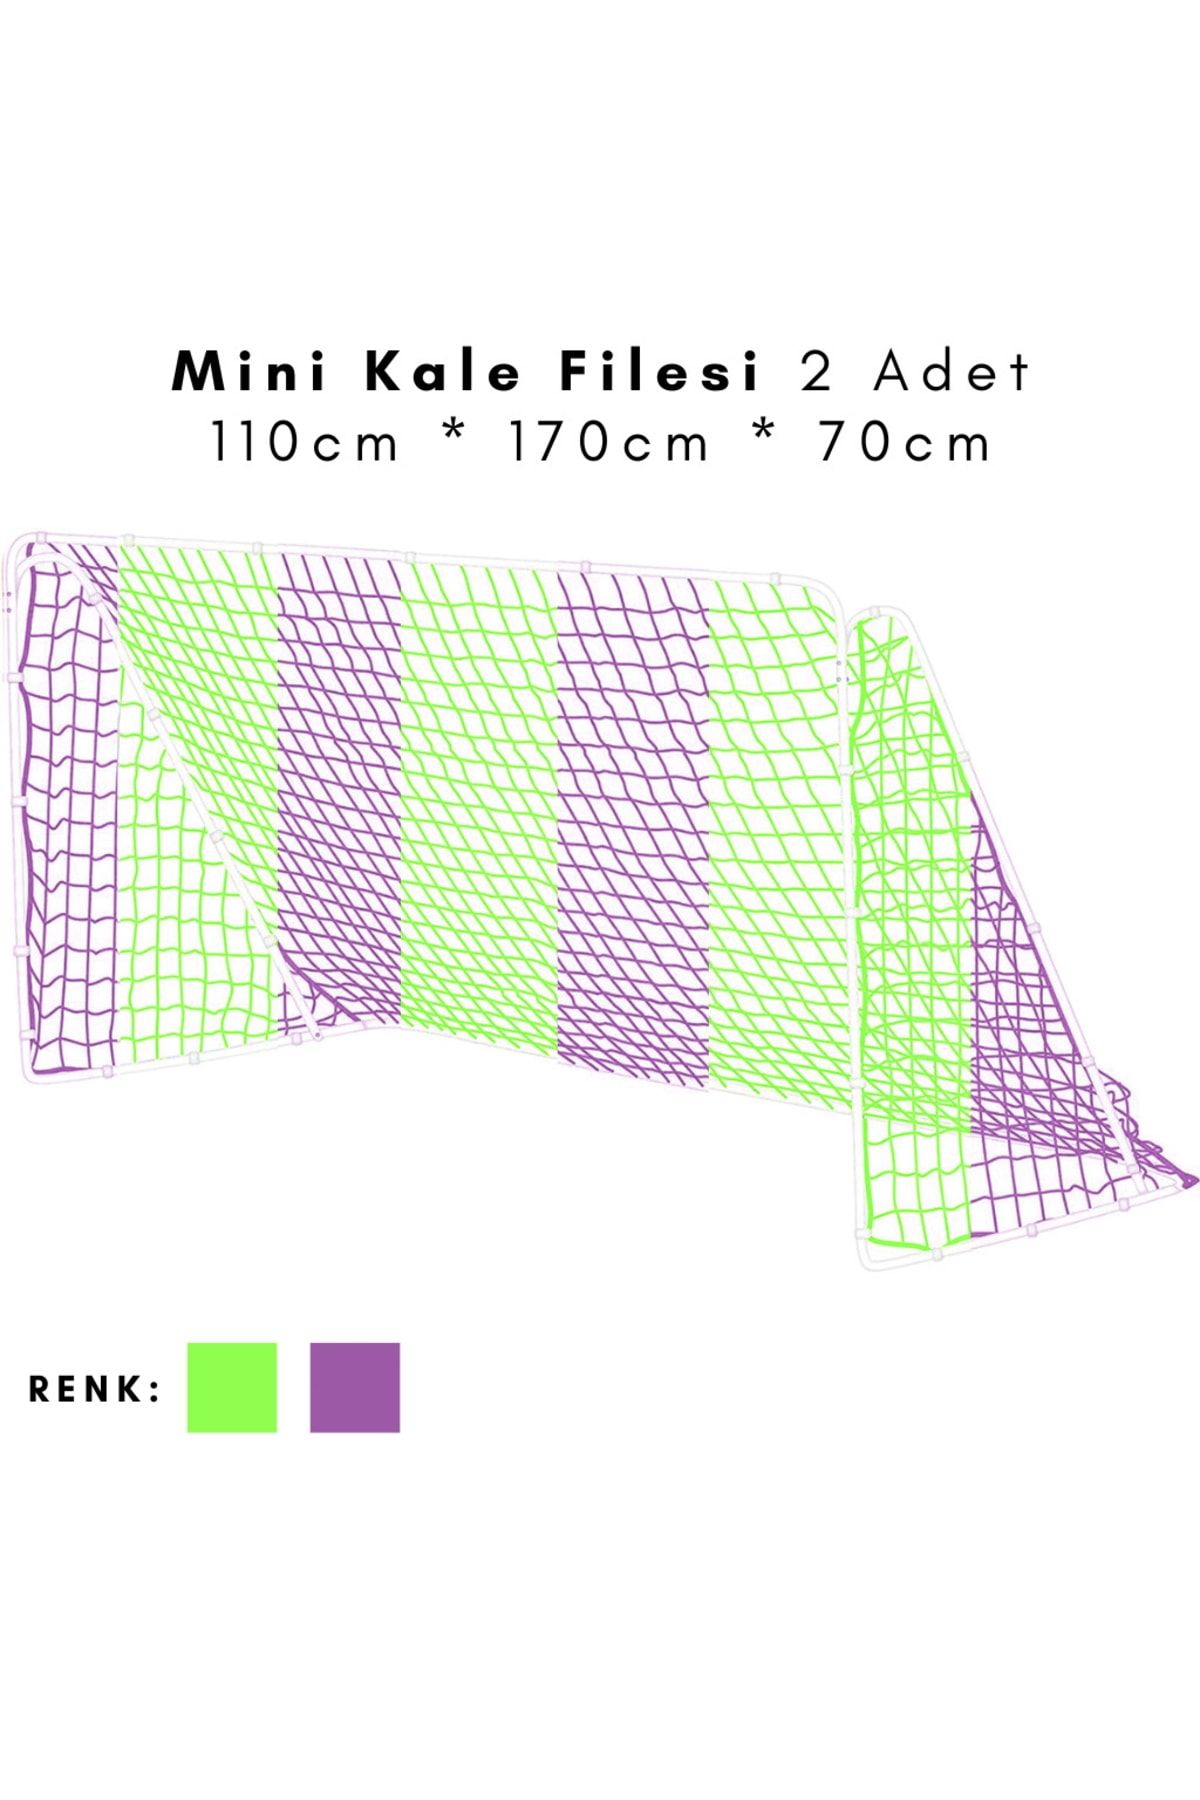 ÖZBEK Minyatür Kale Filesi - Mini Kale Ağı 110 * 170 * 70cm (2 Adet File)